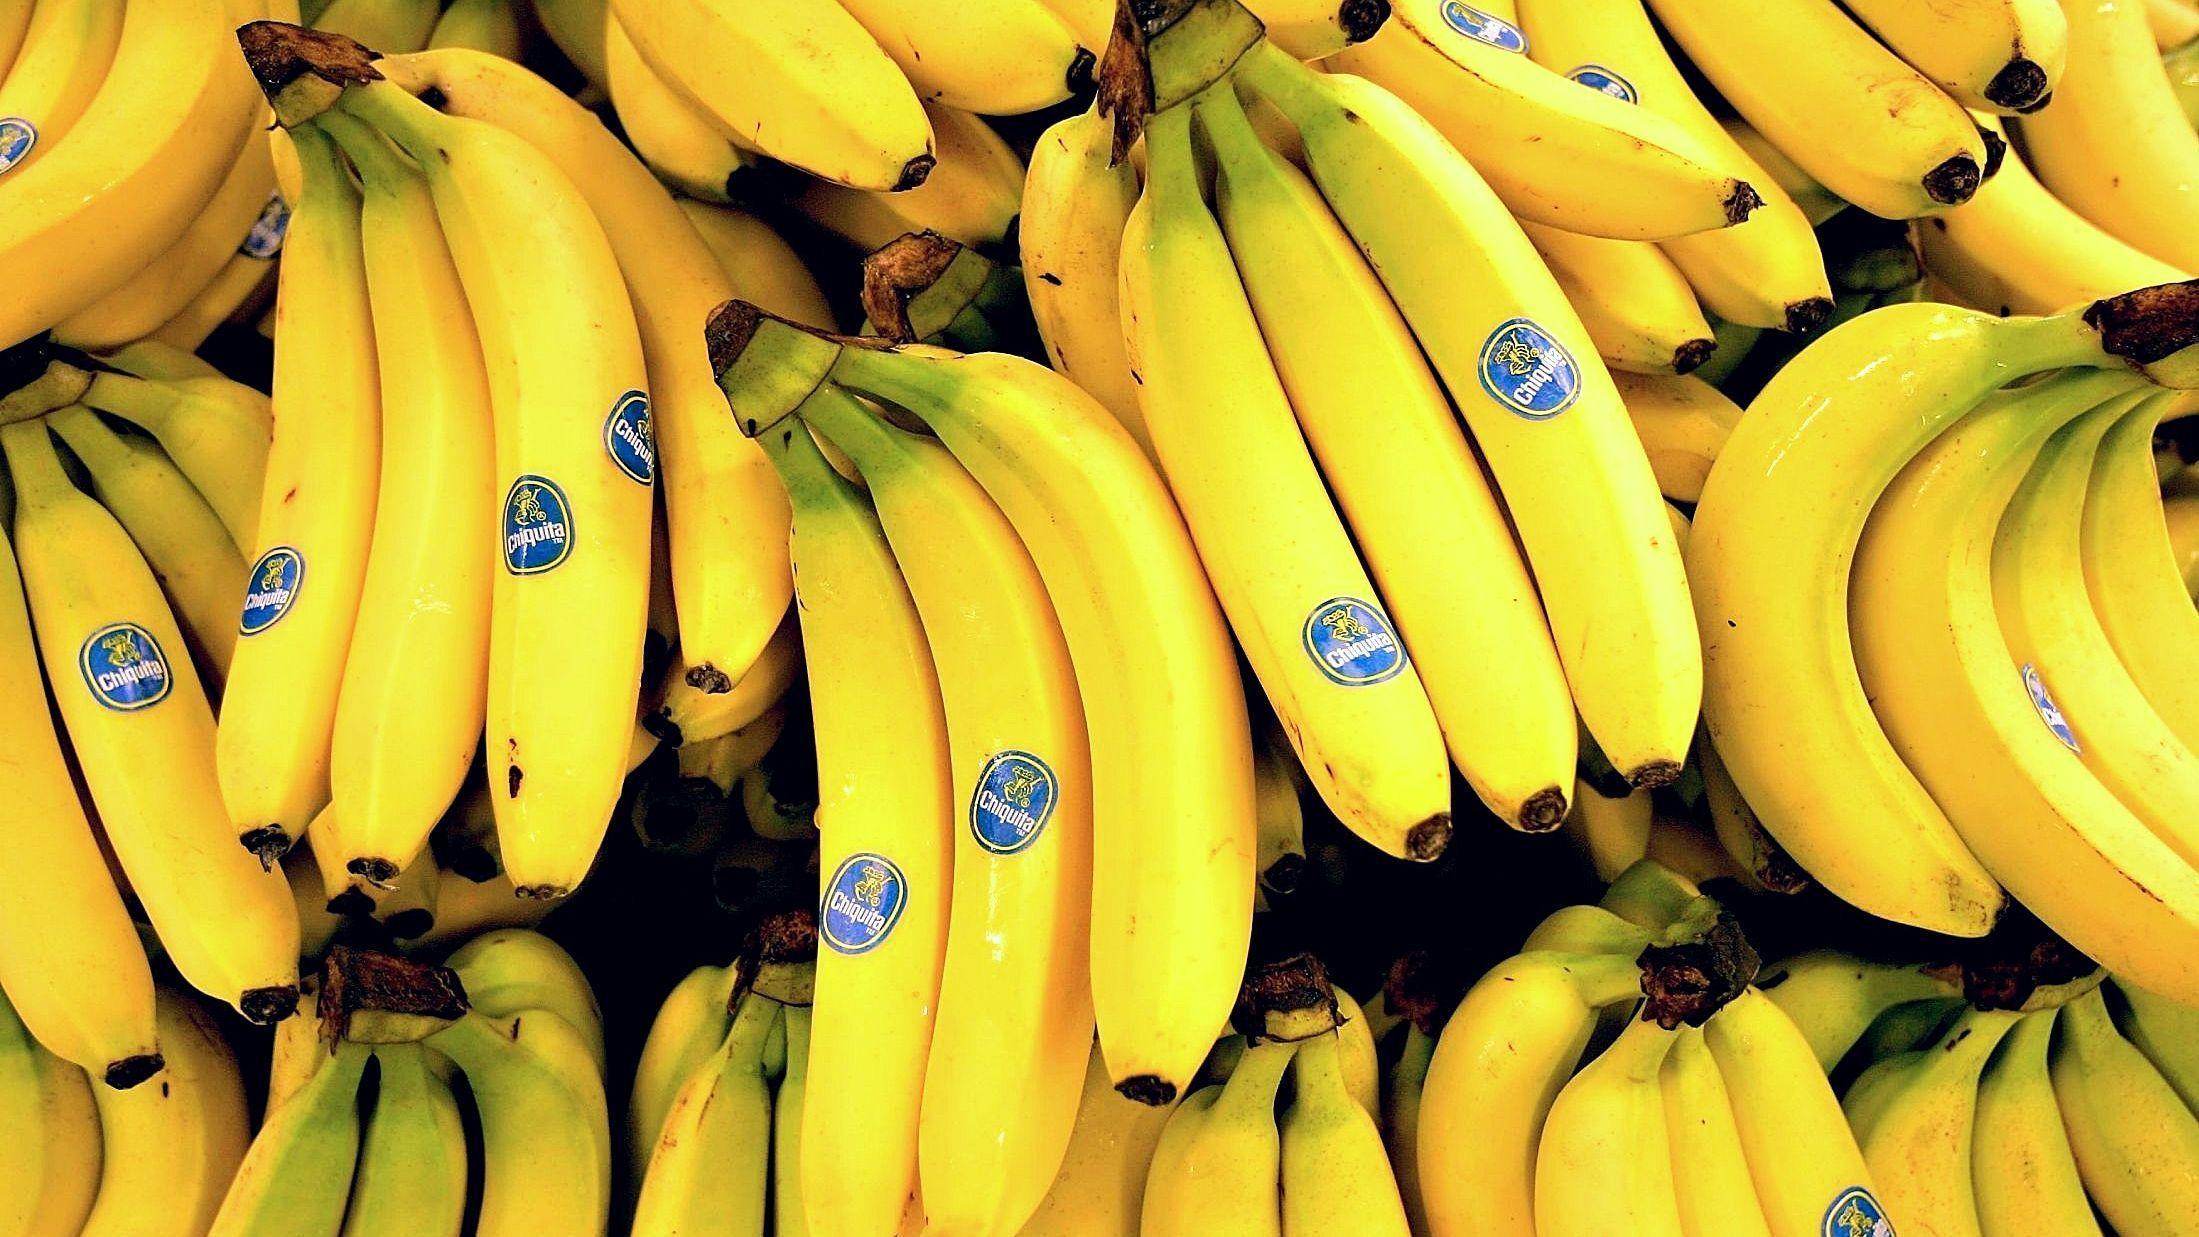 OPPBEVARING: Unngå at bananene blir brune ved å følge disse rådene. Foto: Mattis Sandblad